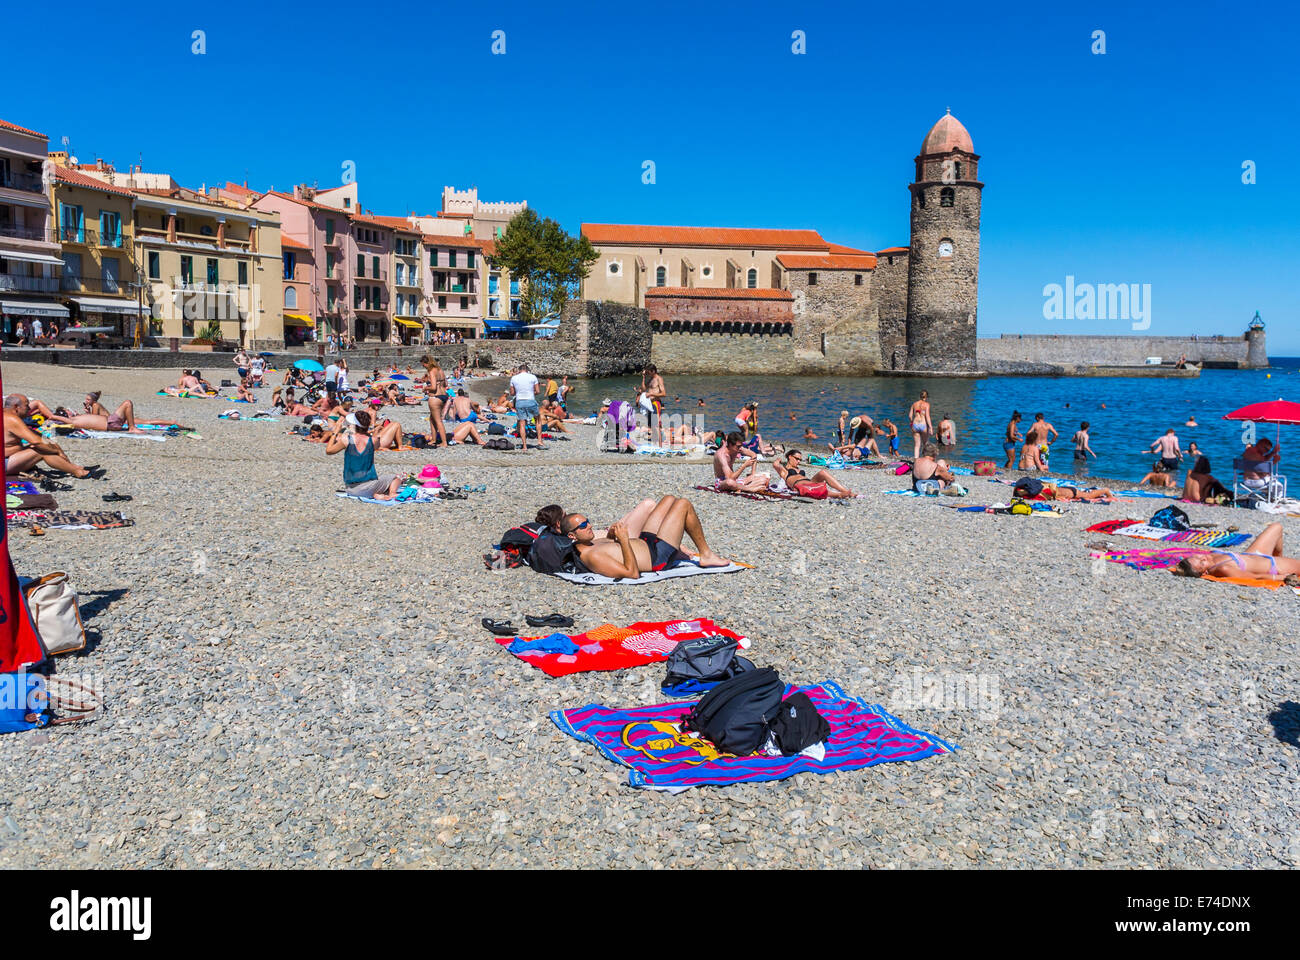 Collioure, France, vacances, aux personnes bénéficiant d'une scène de plage, mer Méditerranée, mer Village près de Perpignan, au sud de la France Banque D'Images